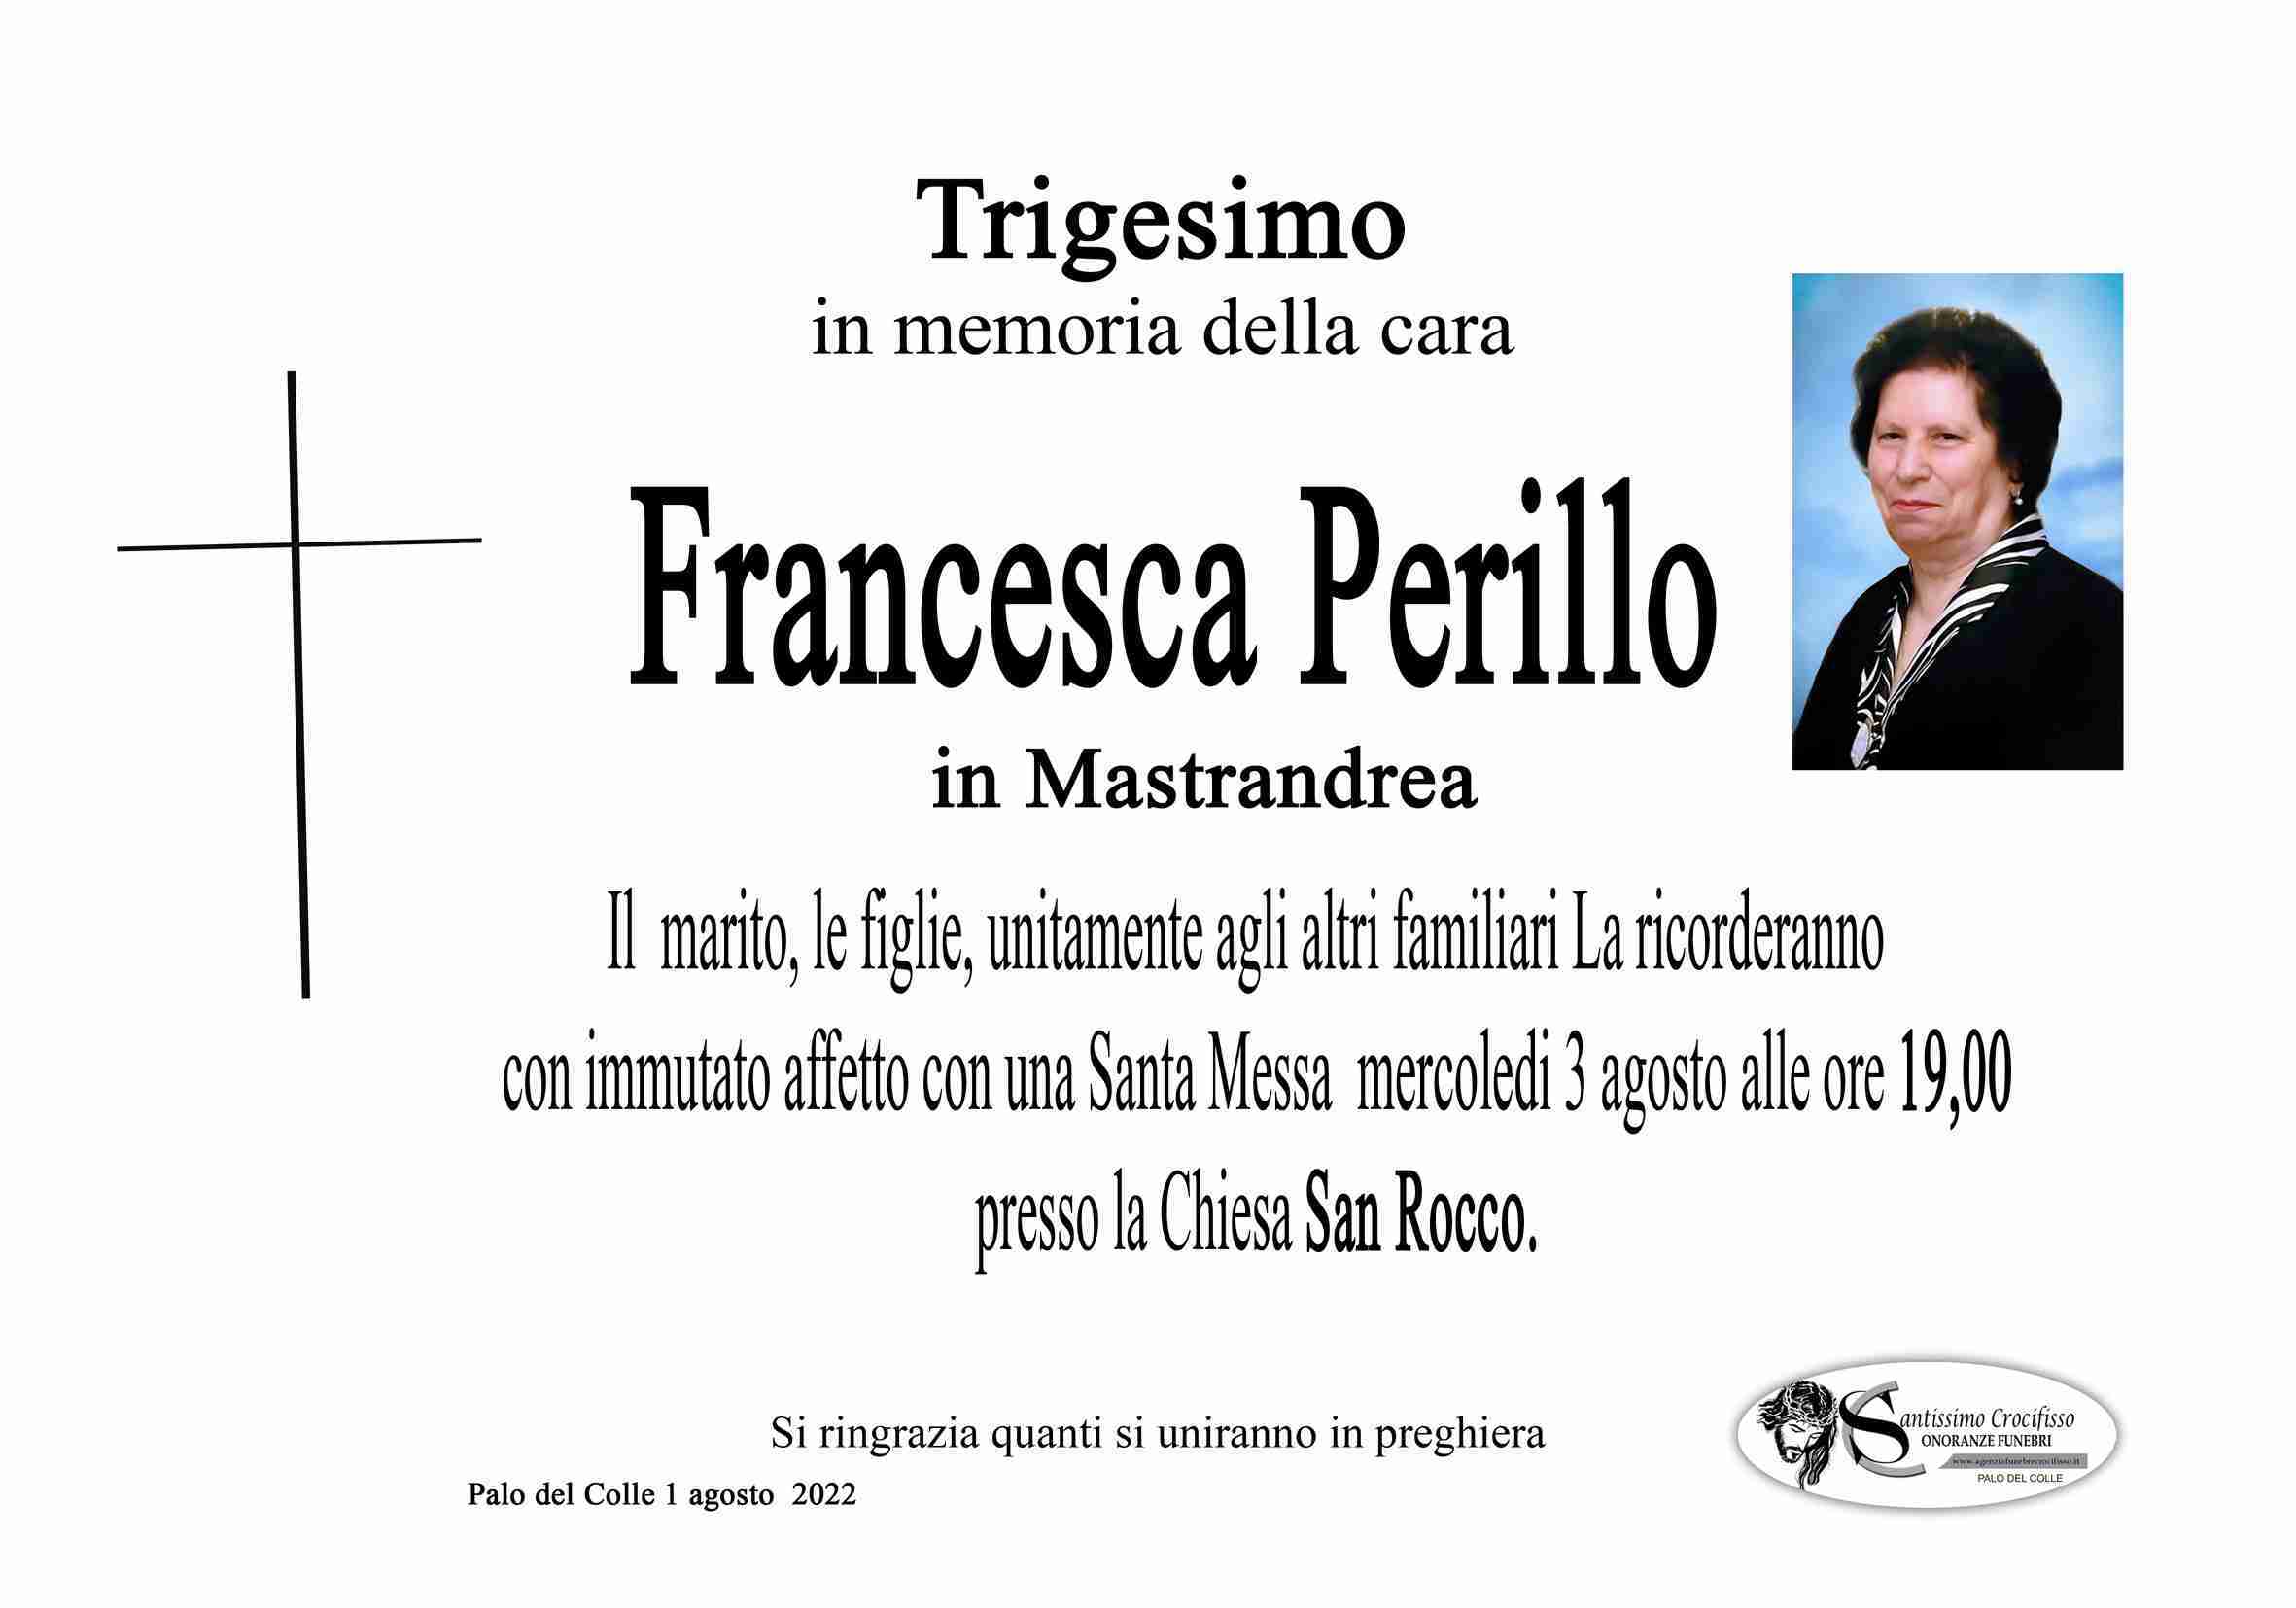 Francesca Perillo